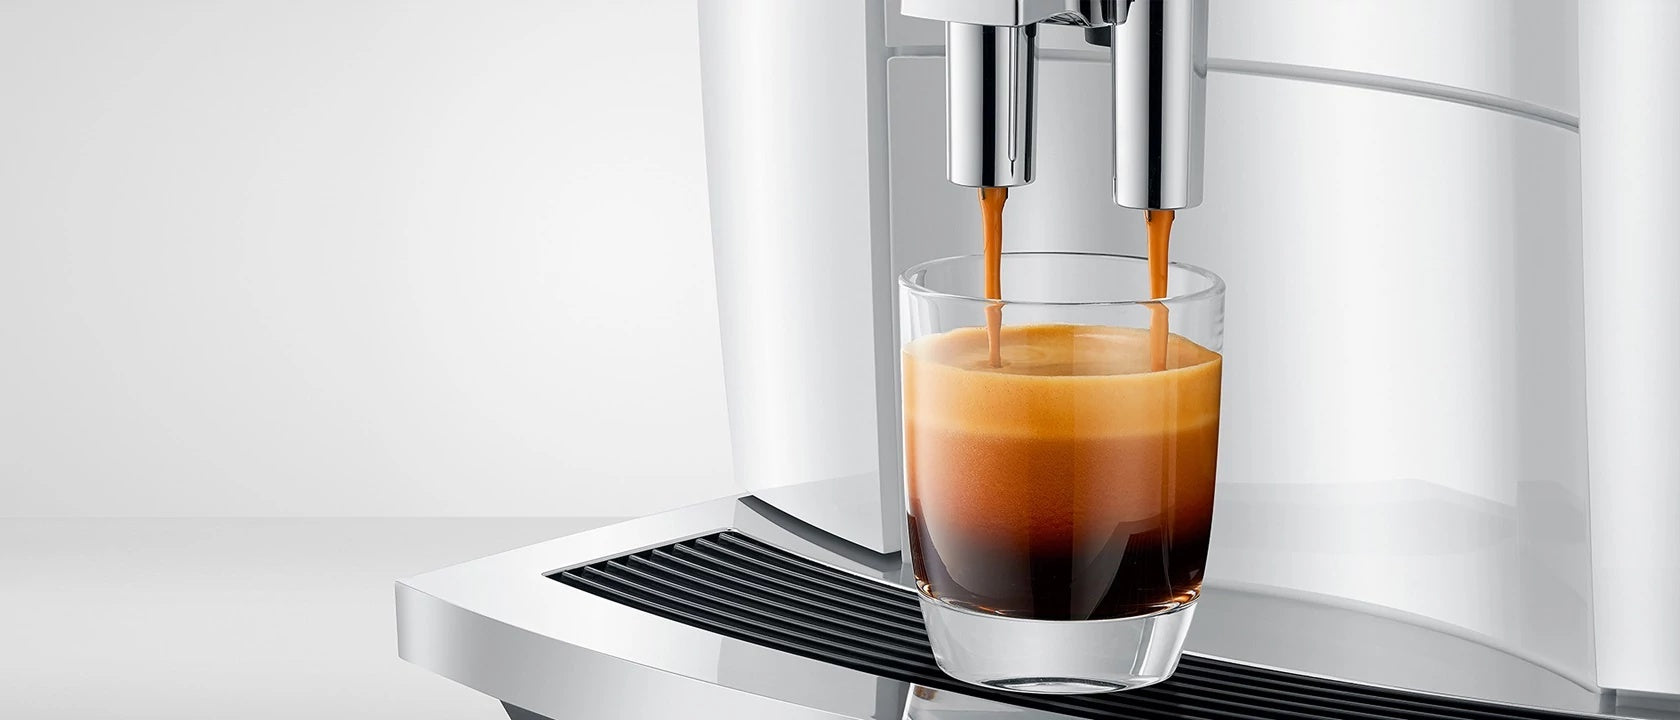 How to use the New Jura E8 Super Automatic Espresso Machine